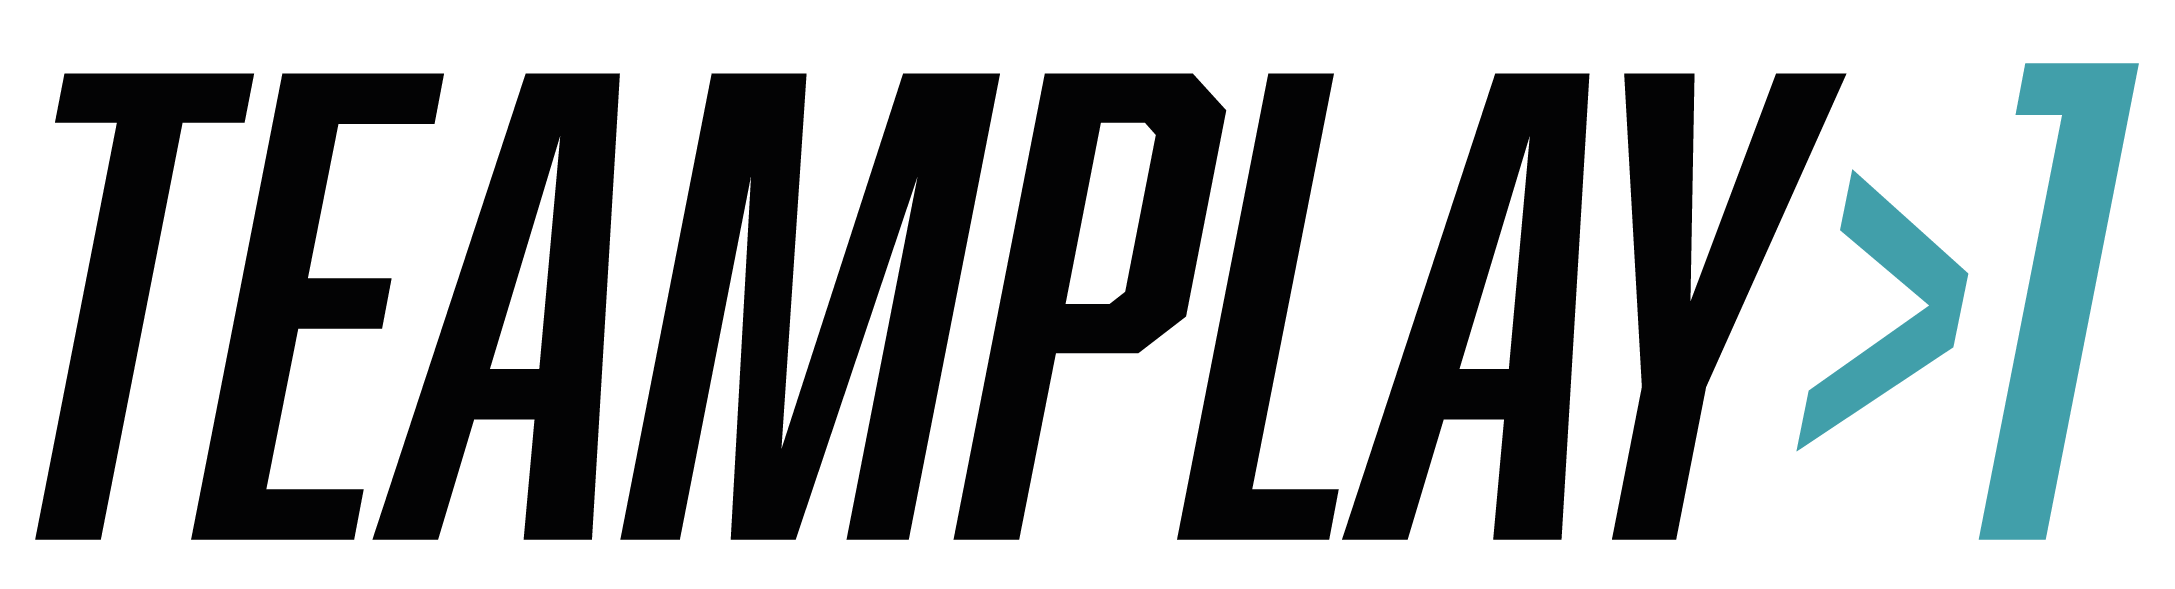 Teamplay1_Logo_transparent-11.png